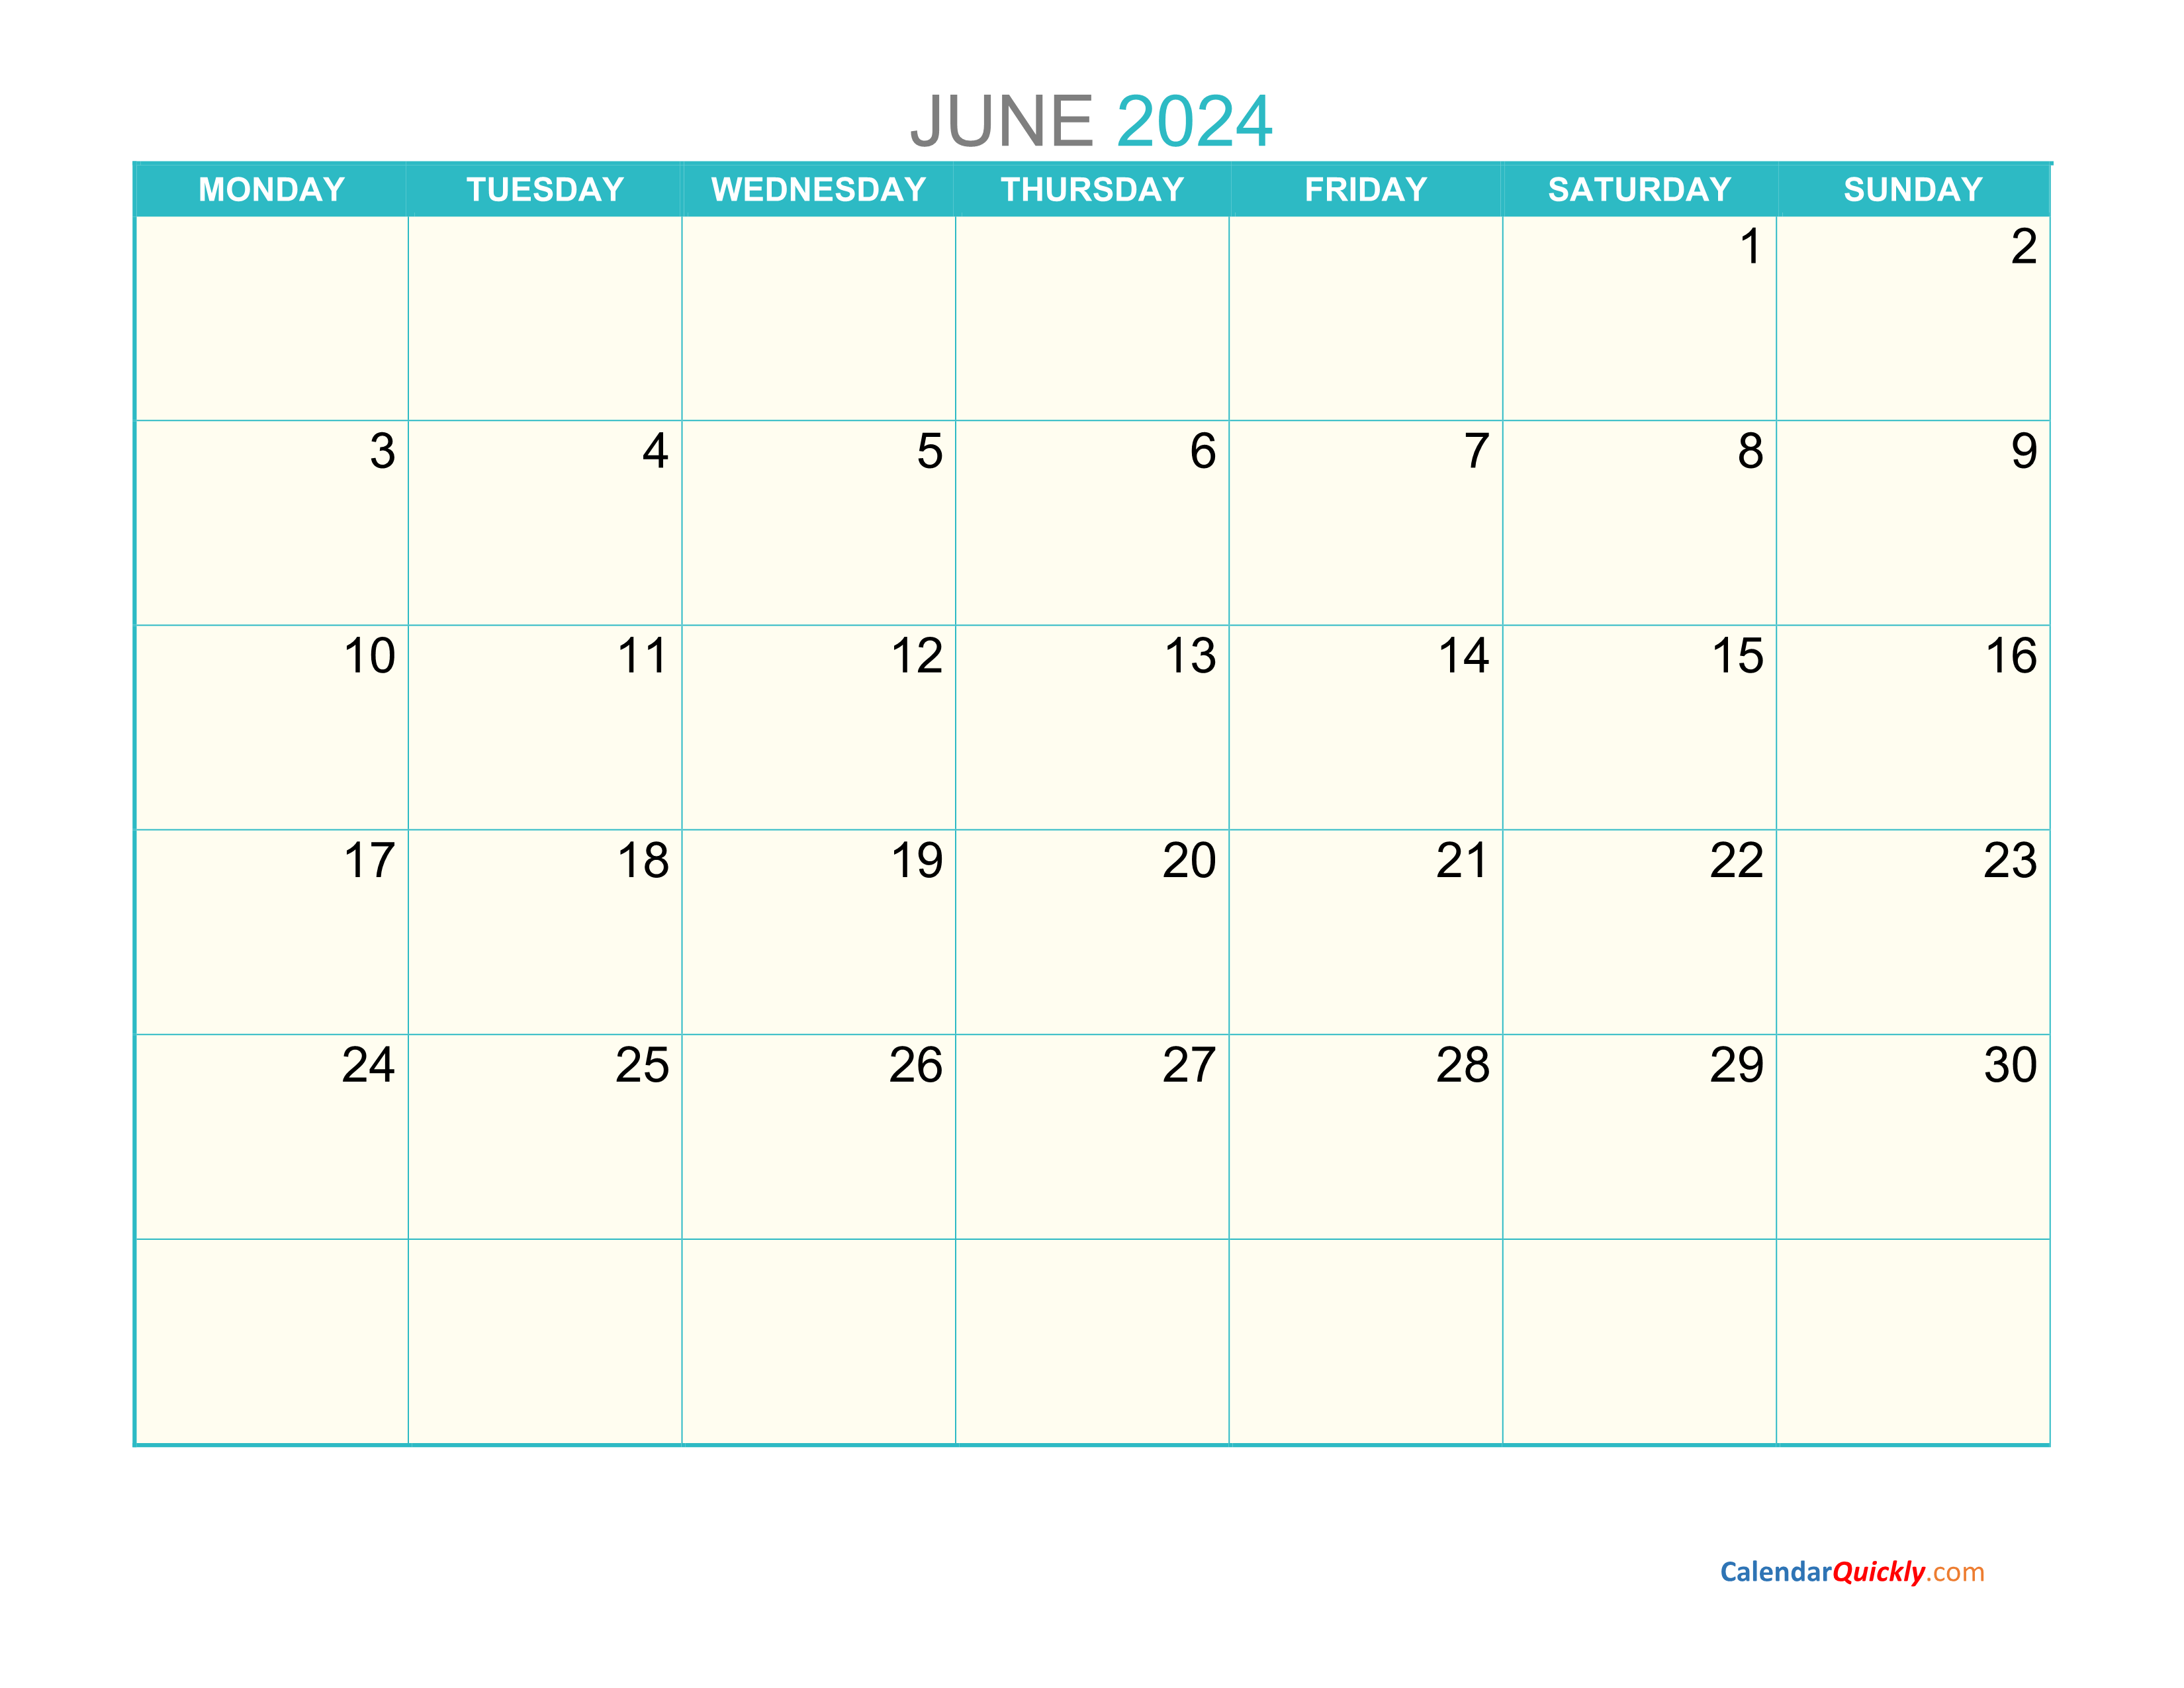 June Monday 2024 Calendar Printable Calendar Quickly